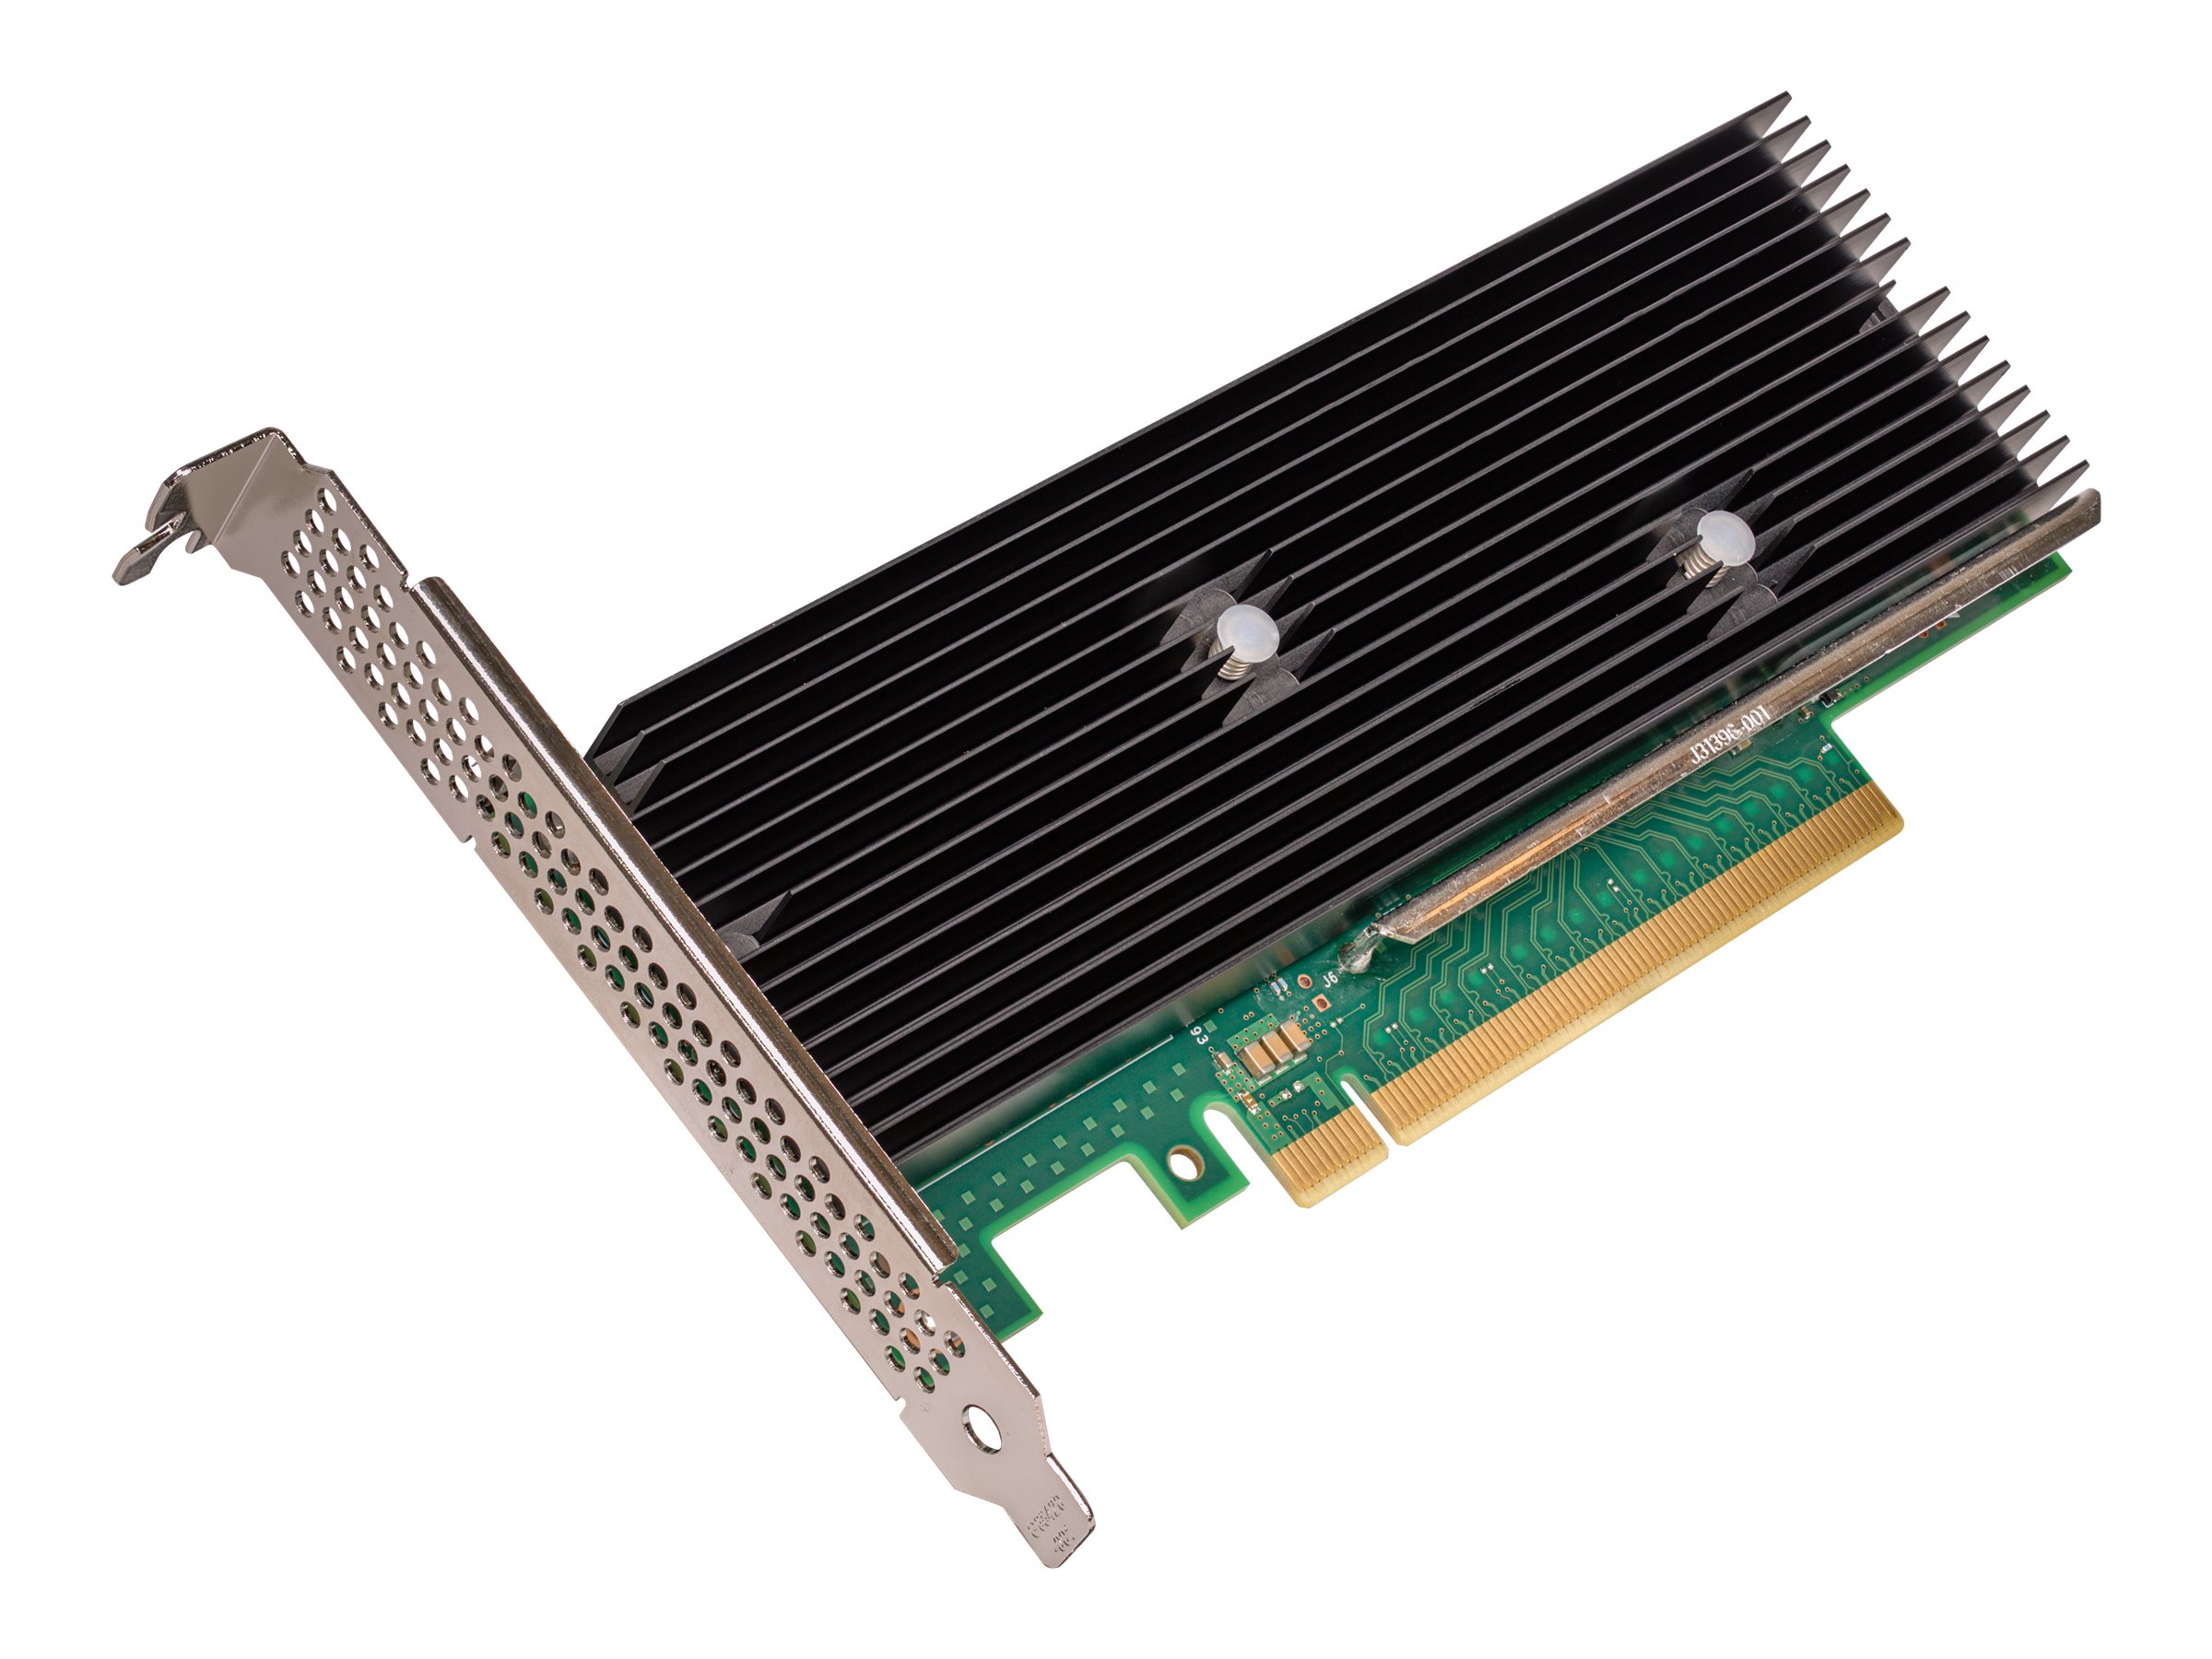 Intel QuickAssist Adapter 8970 - Accélérateur cryptographique - PCIe 3.0 x16 profil bas - IQA89701G2P5 - Adaptateurs réseau PCI-e